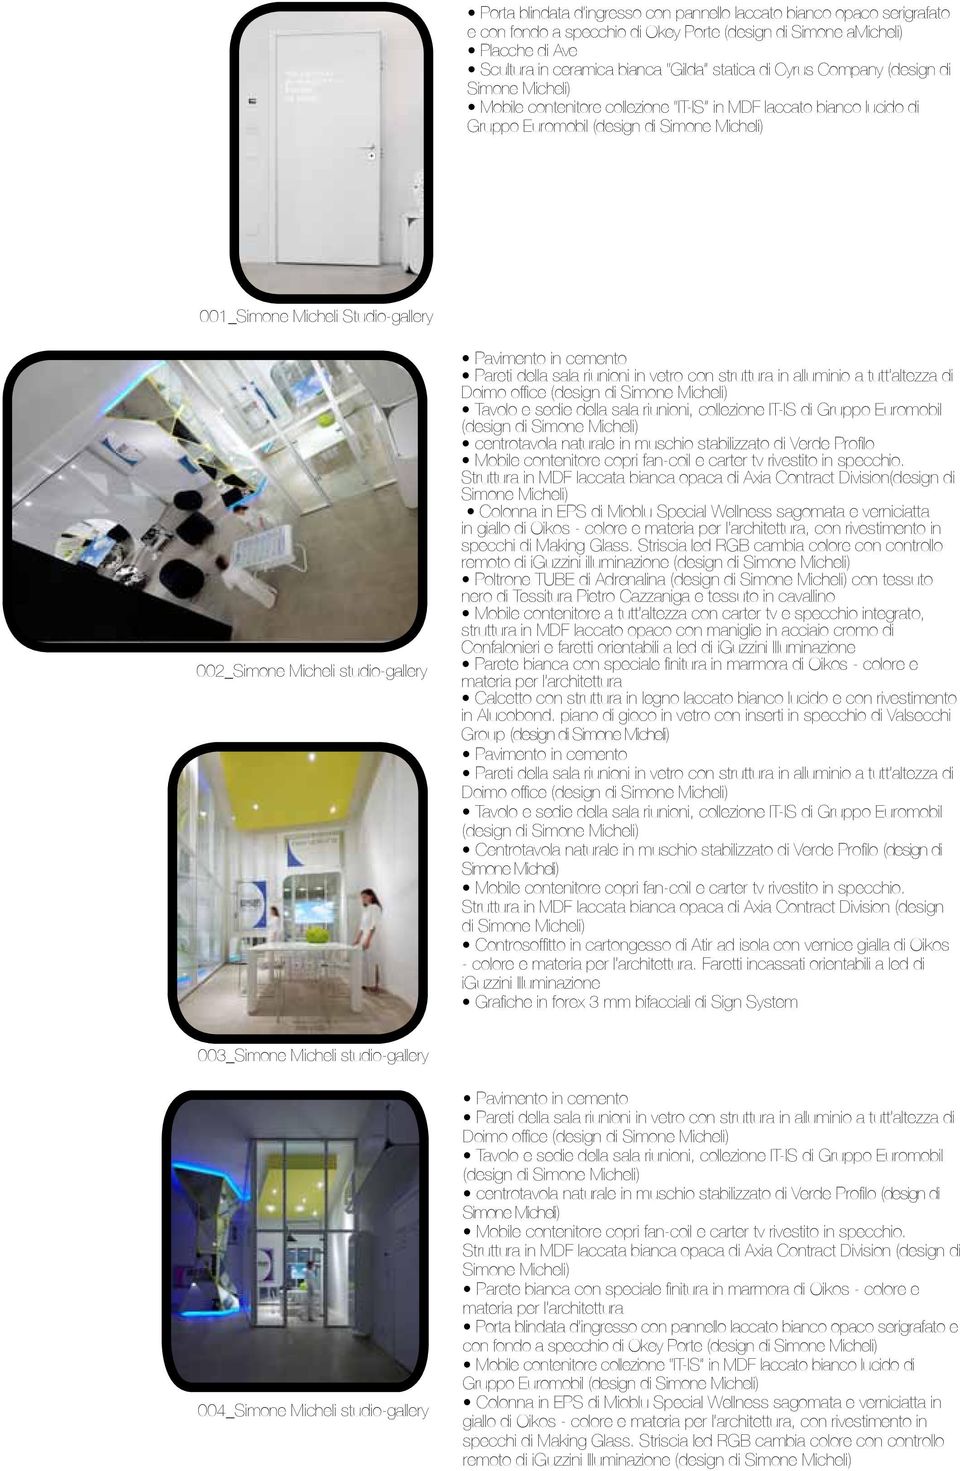 office (design di Tavolo e sedie della sala riunioni, collezione IT-IS di Gruppo Euromobil (design di centrotavola naturale in muschio stabilizzato di Verde Profilo Mobile contenitore copri fan-coil